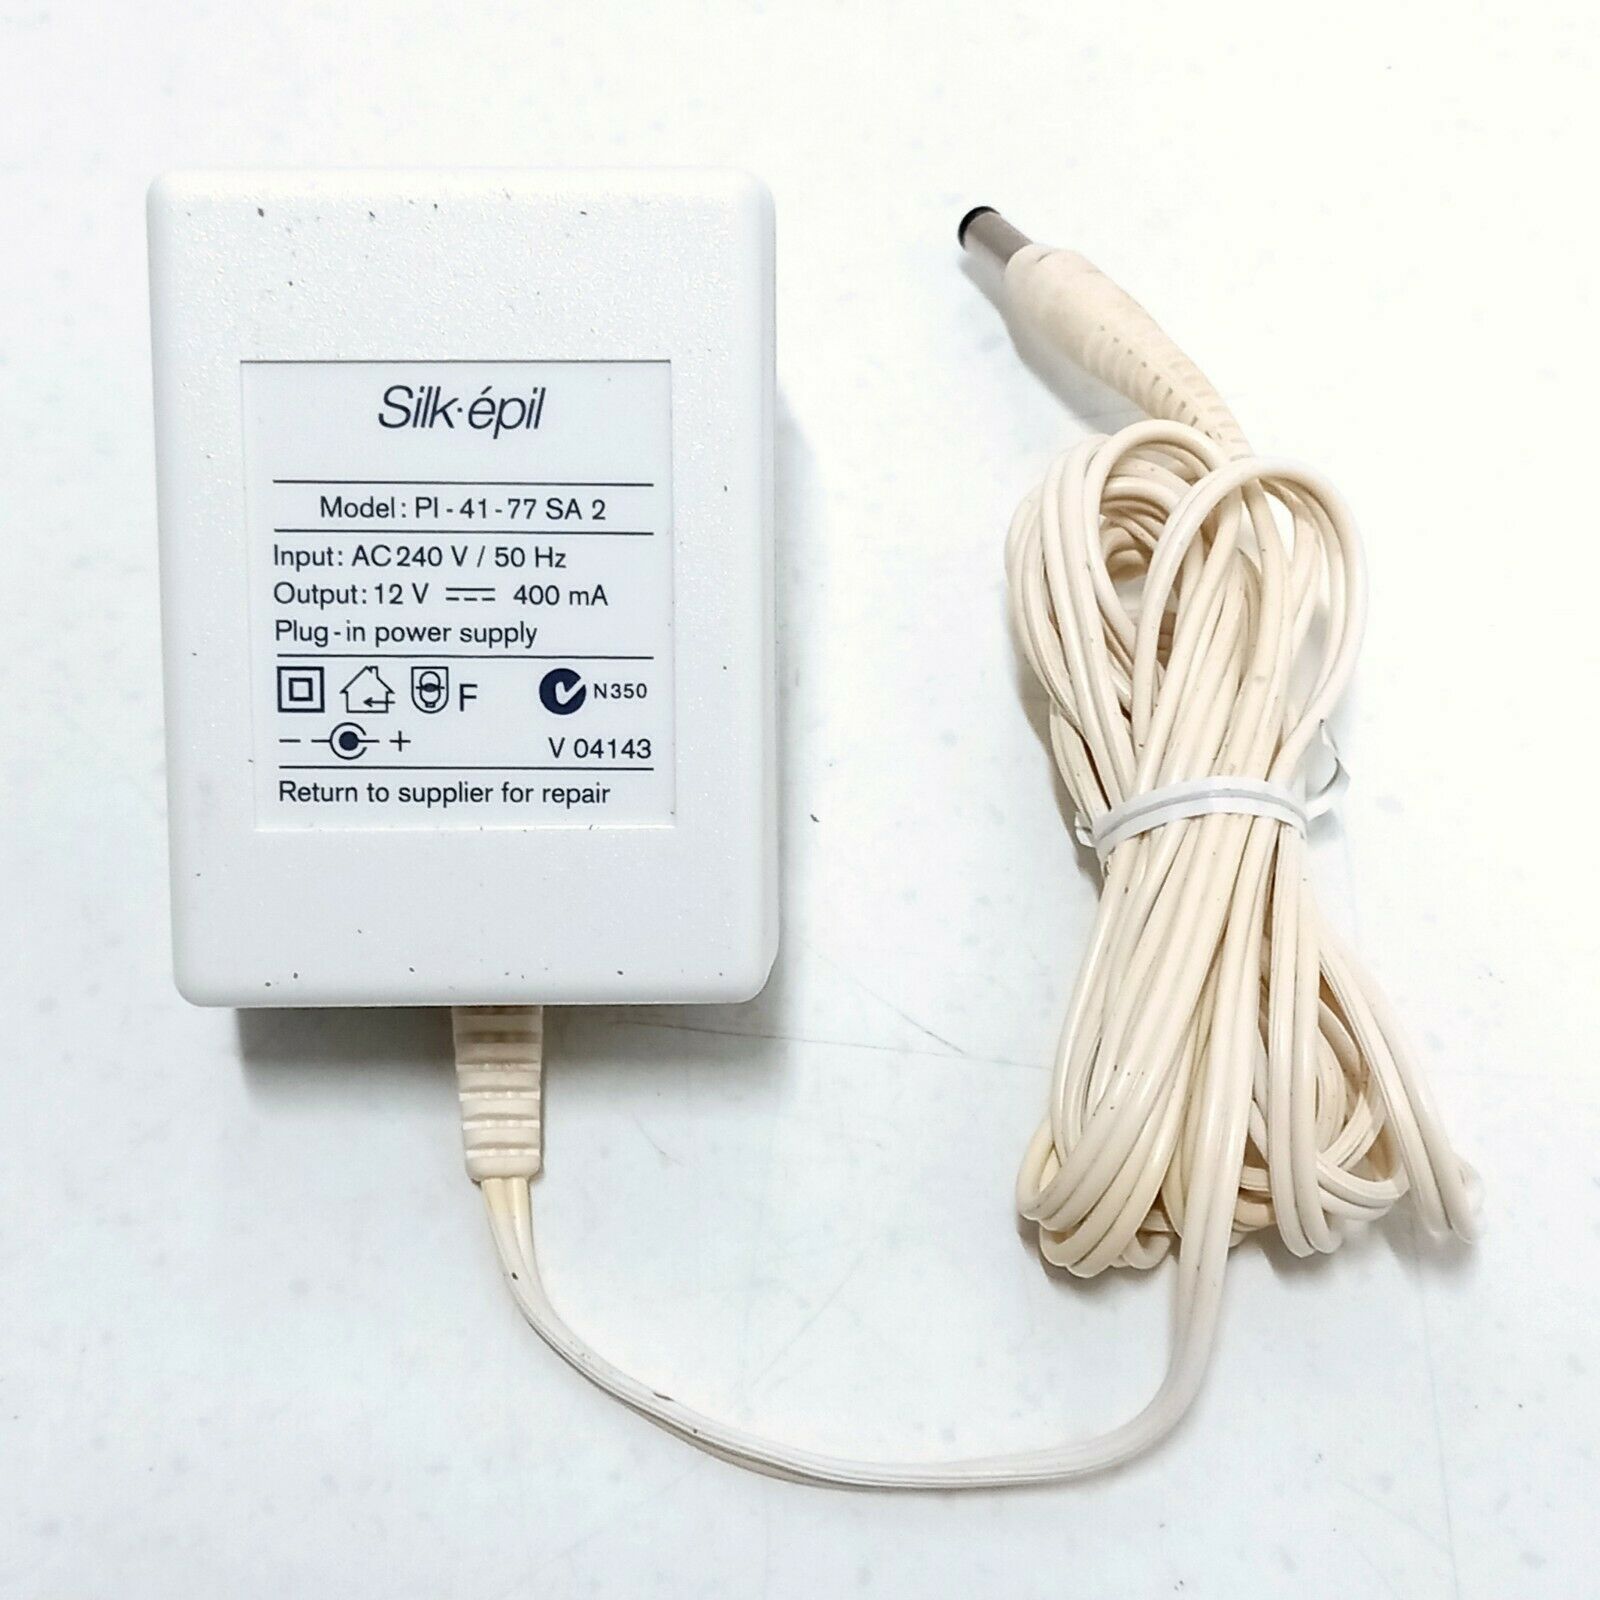 *Brand NEW*Silk epil AC Adapter Pi-41-77SA2 12v Power Supply